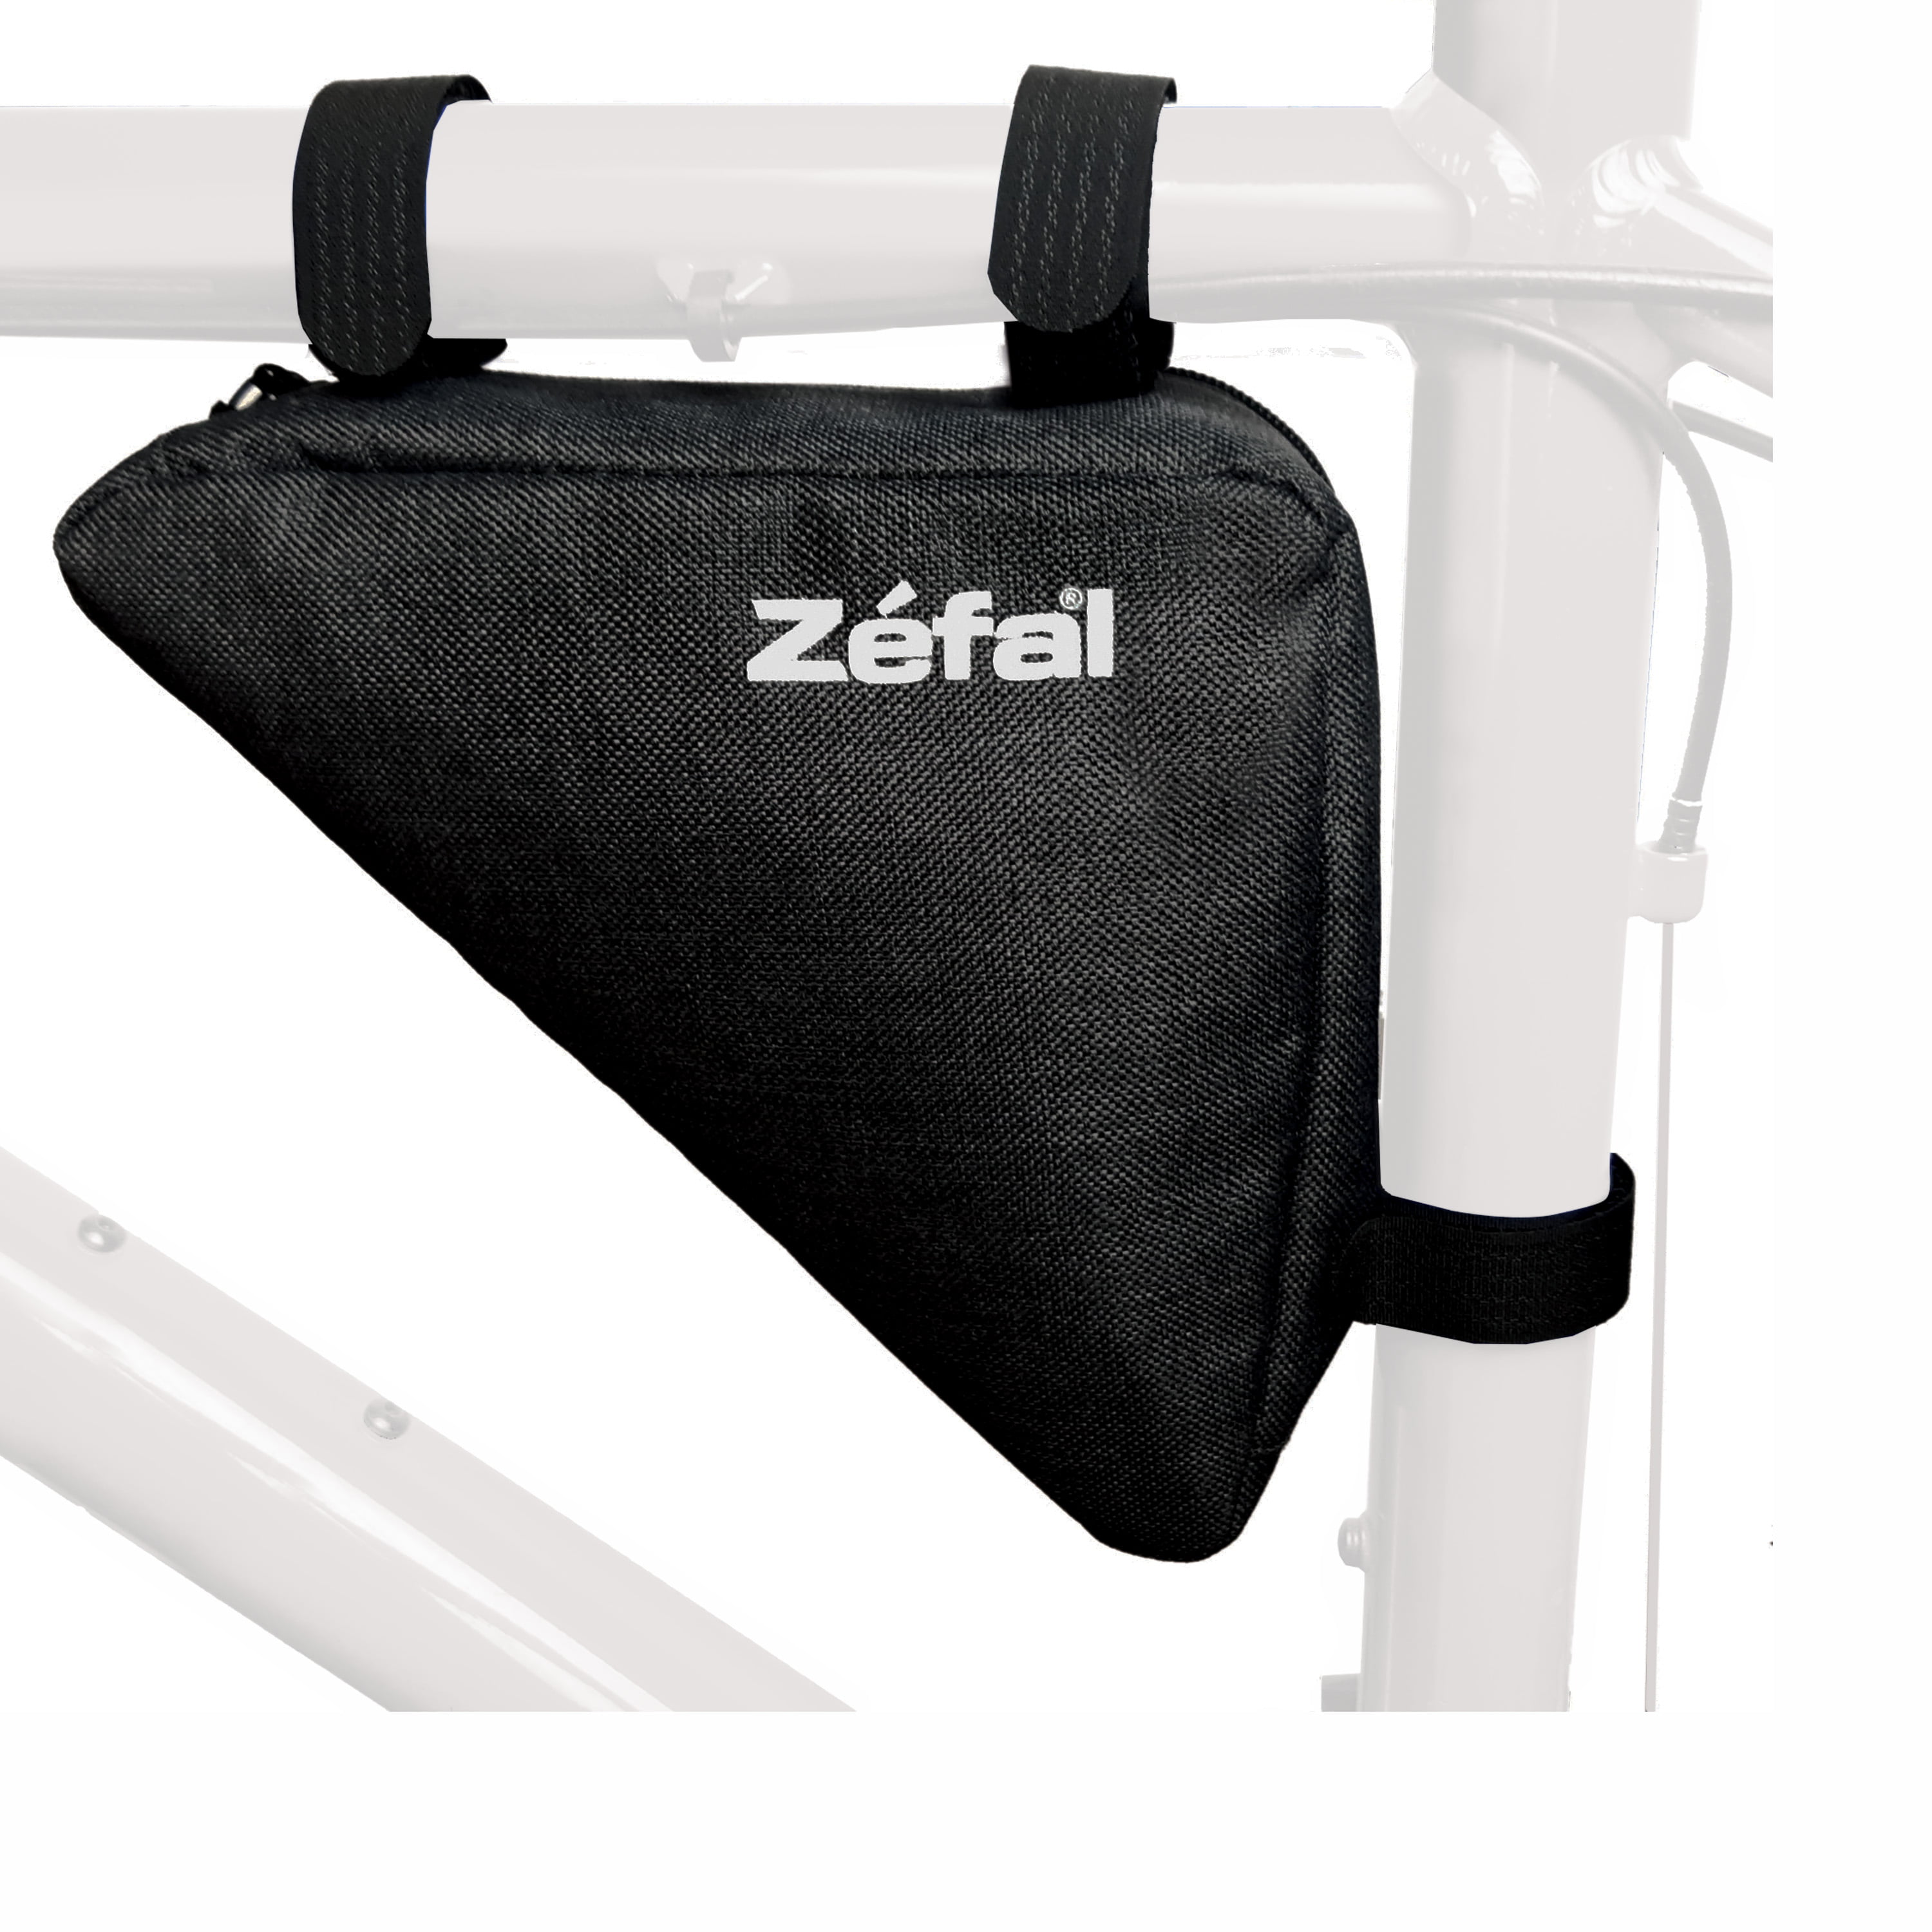 Zefal Triangle Frame Bike Bag (Easy Install, Huge Storage